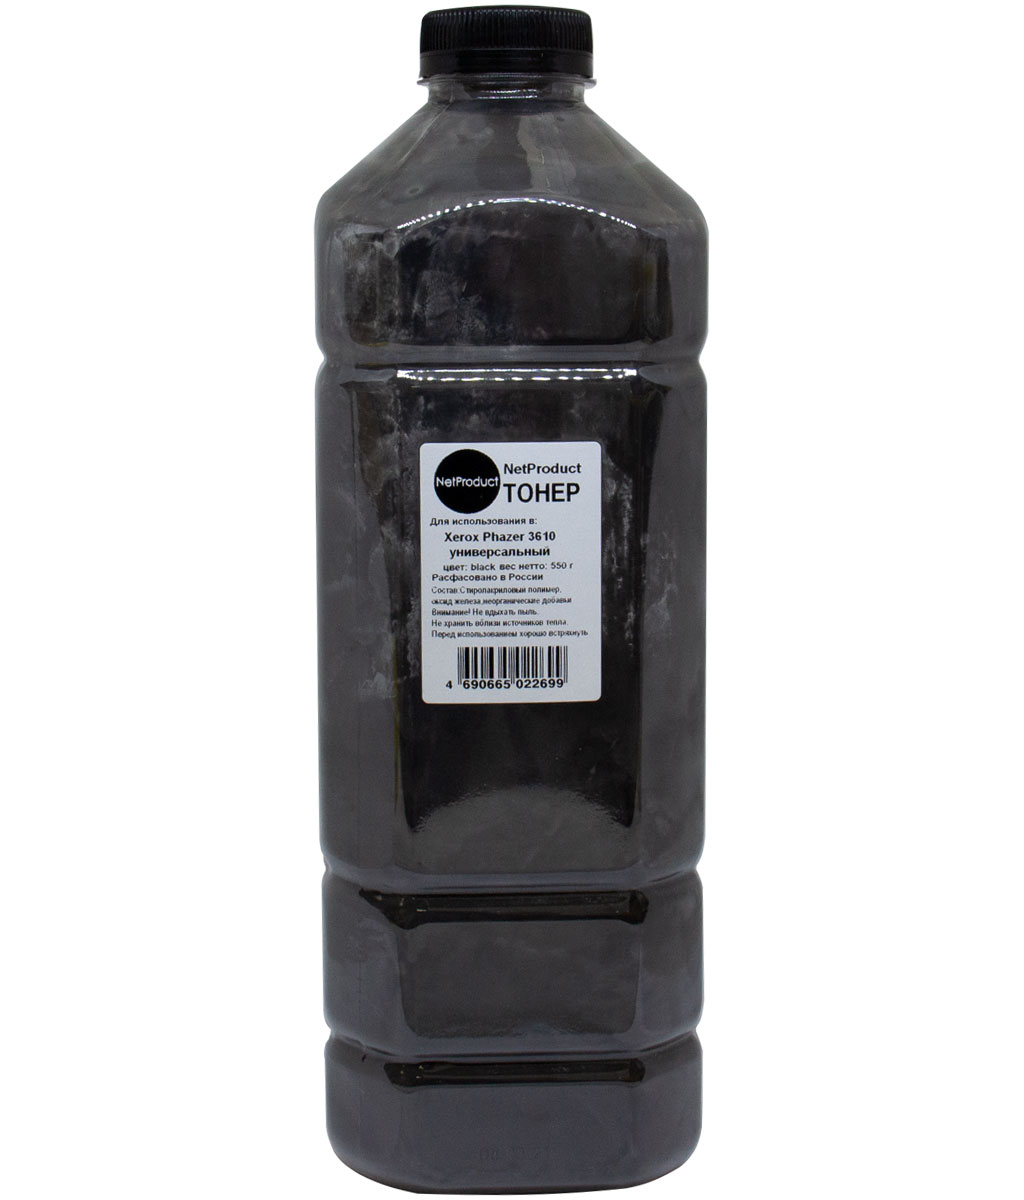 Тонер NetProduct, бутыль 550 г, черный, совместимый для Xerox Phaser 3610, WC 3615/3655, универсальный (201040839022)